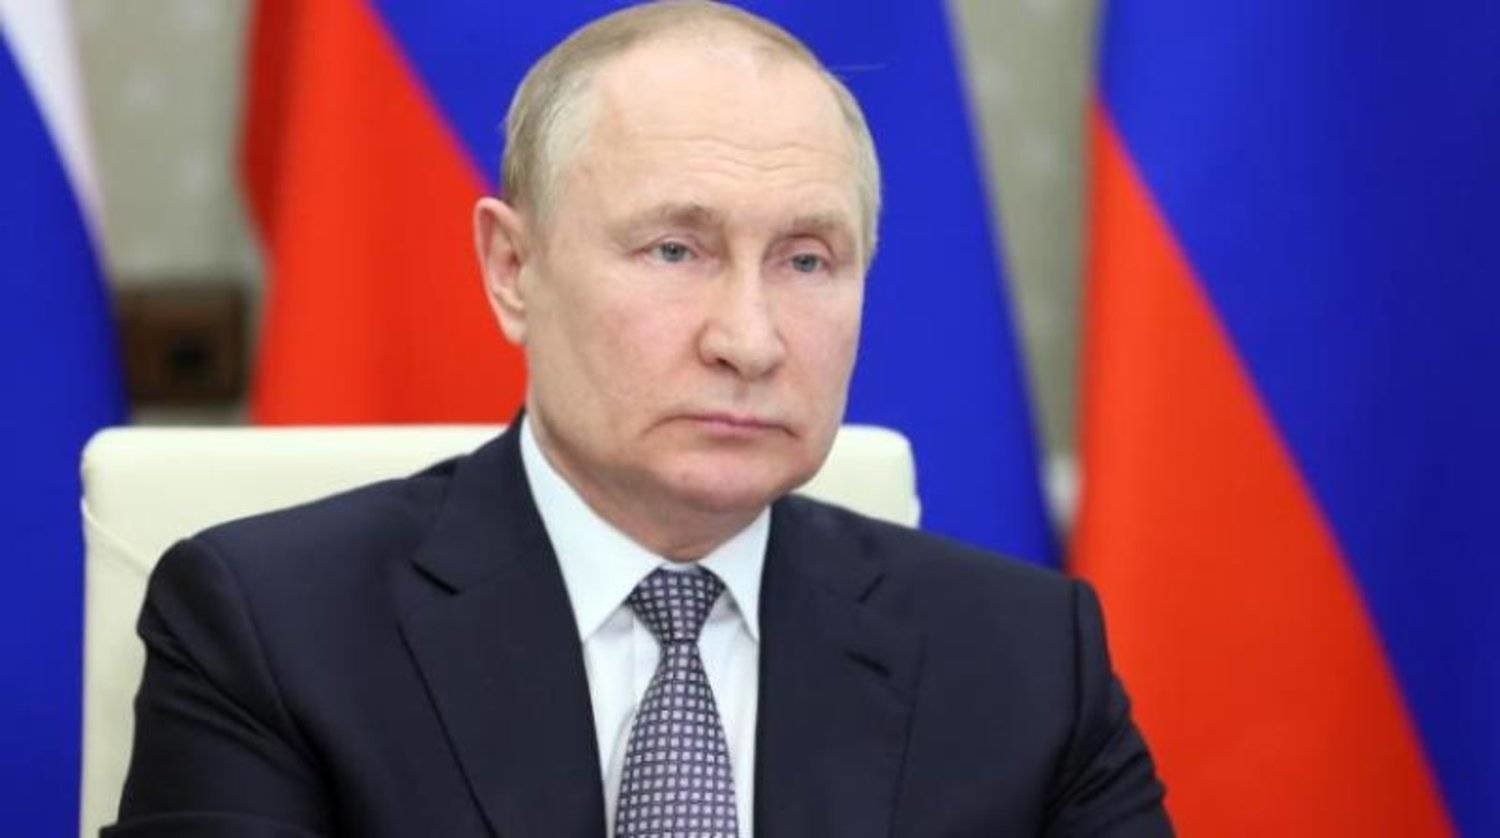 الرئيس الروسي للقمة العربية: نحرص على دعم جهود حل الأزمات في السودان وليبيا واليمن